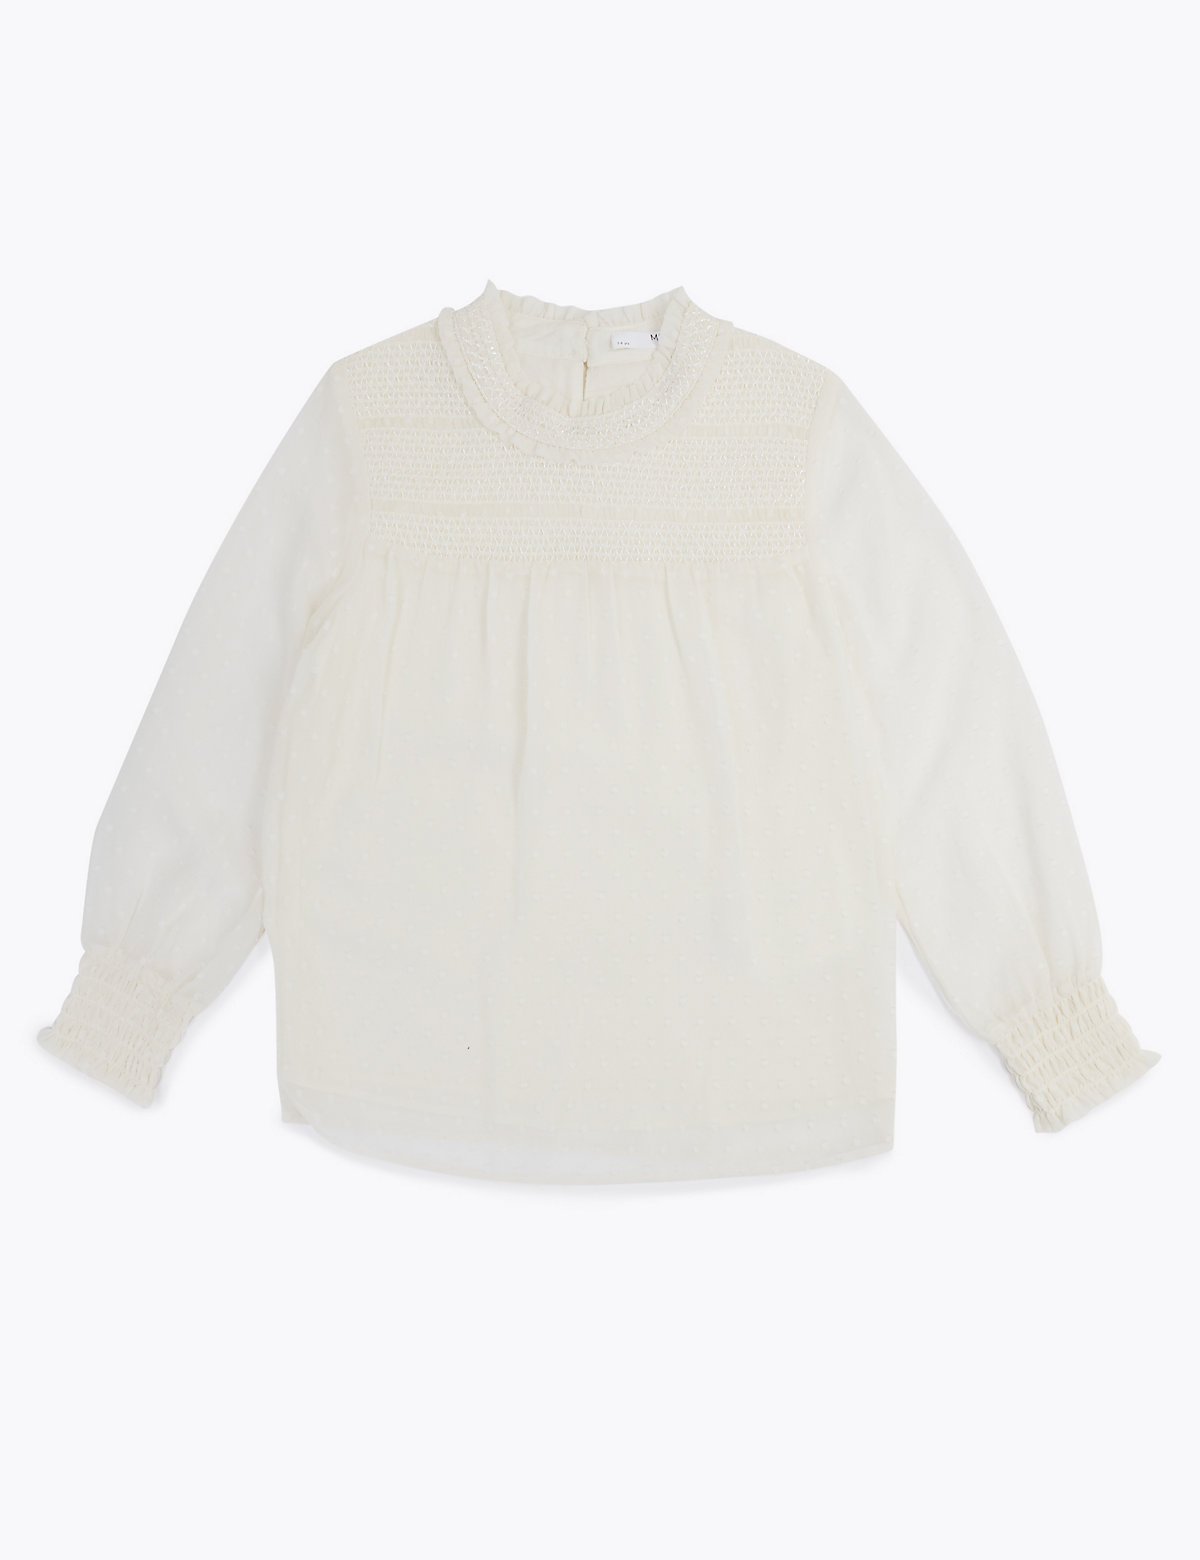 Фактурная блузка с рюшами для девочки Marks & Spencer. Цвет: сливки